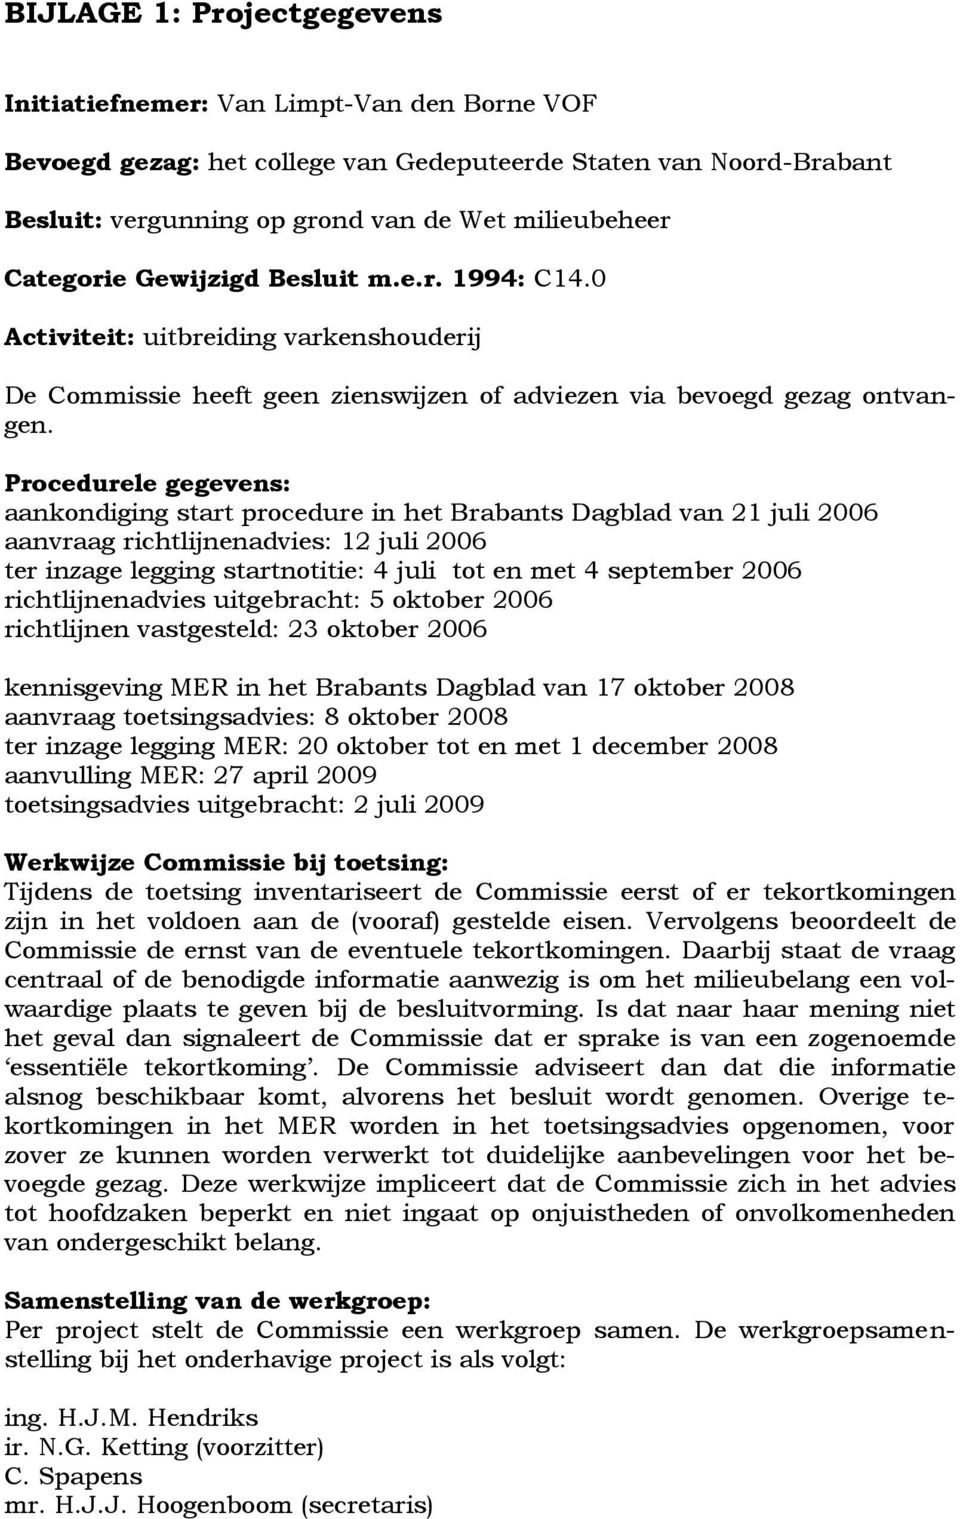 Procedurele gegevens: aankondiging start procedure in het Brabants Dagblad van 21 juli 2006 aanvraag richtlijnenadvies: 12 juli 2006 ter inzage legging startnotitie: 4 juli tot en met 4 september